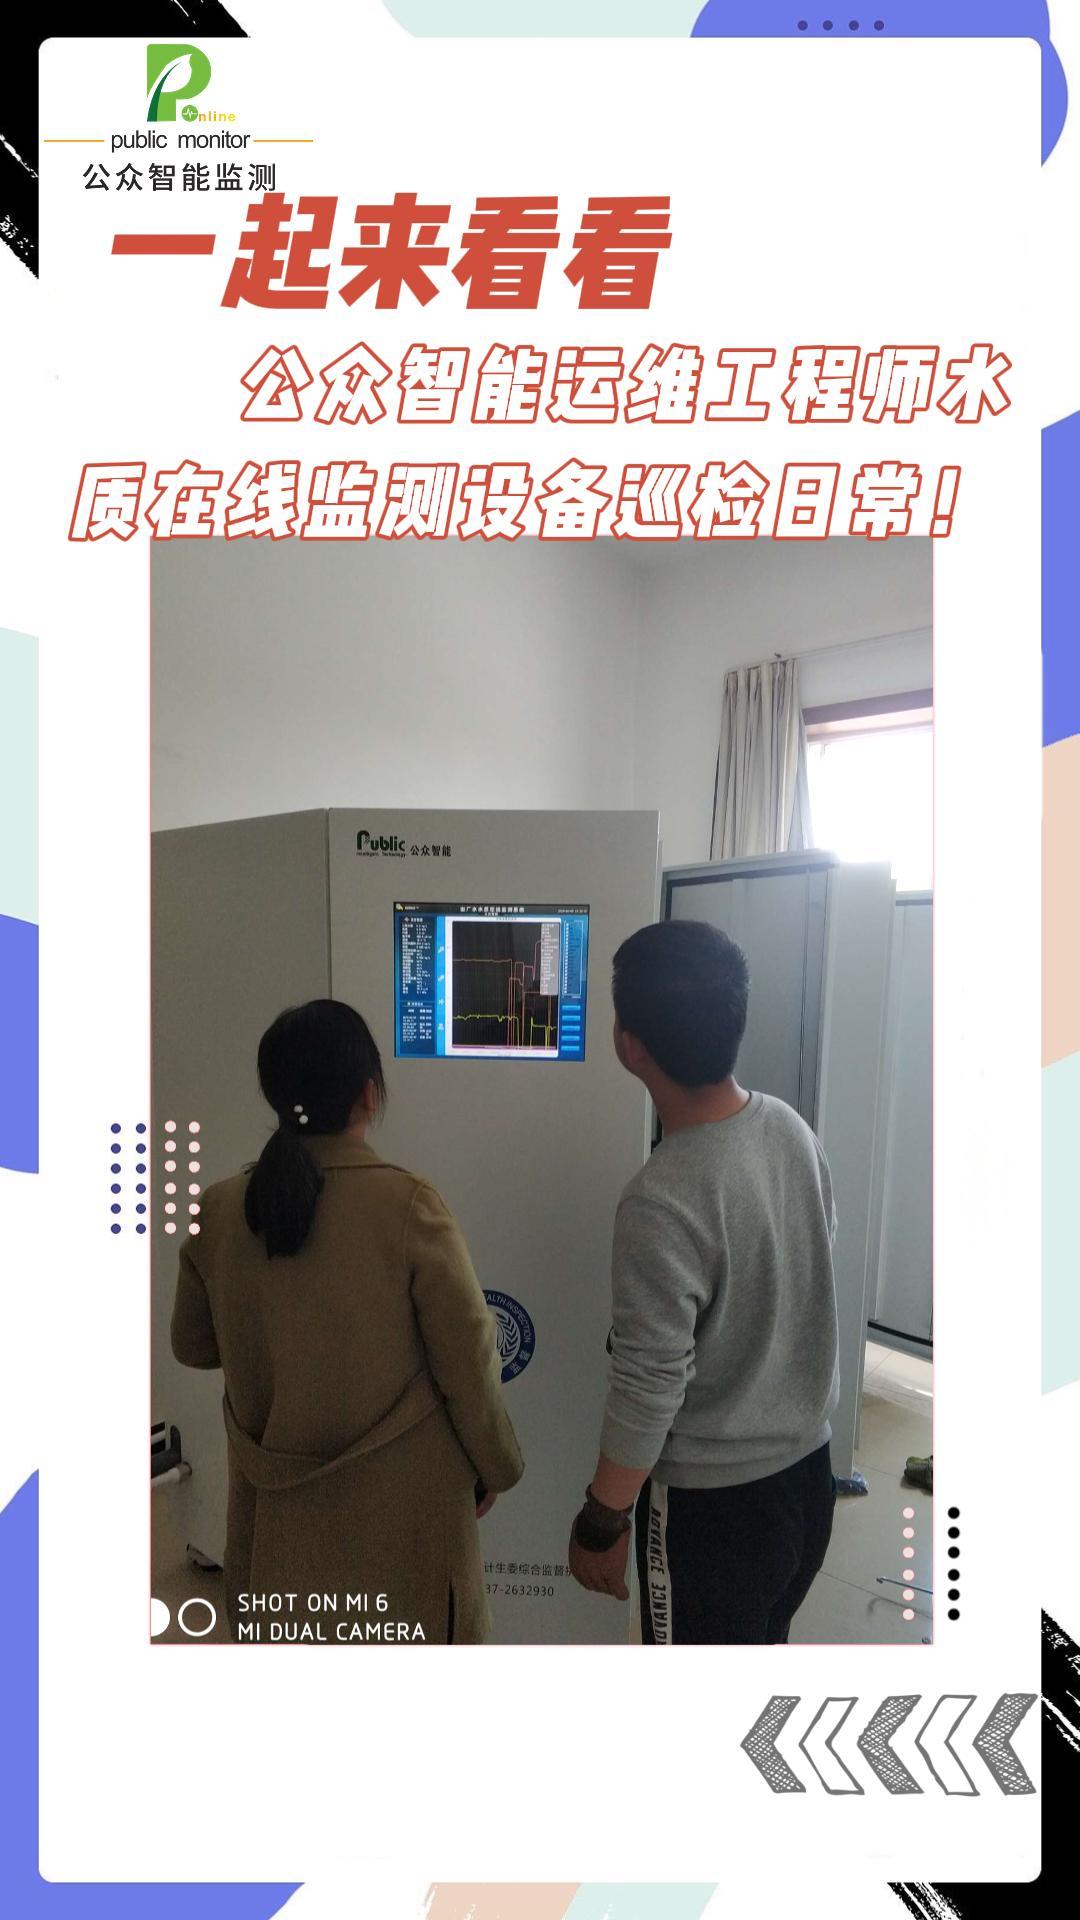 一起来看看公众智能运维工程师水质在线监测设备巡检日常！#陕西公众智能监测#陕西公众智能科技 